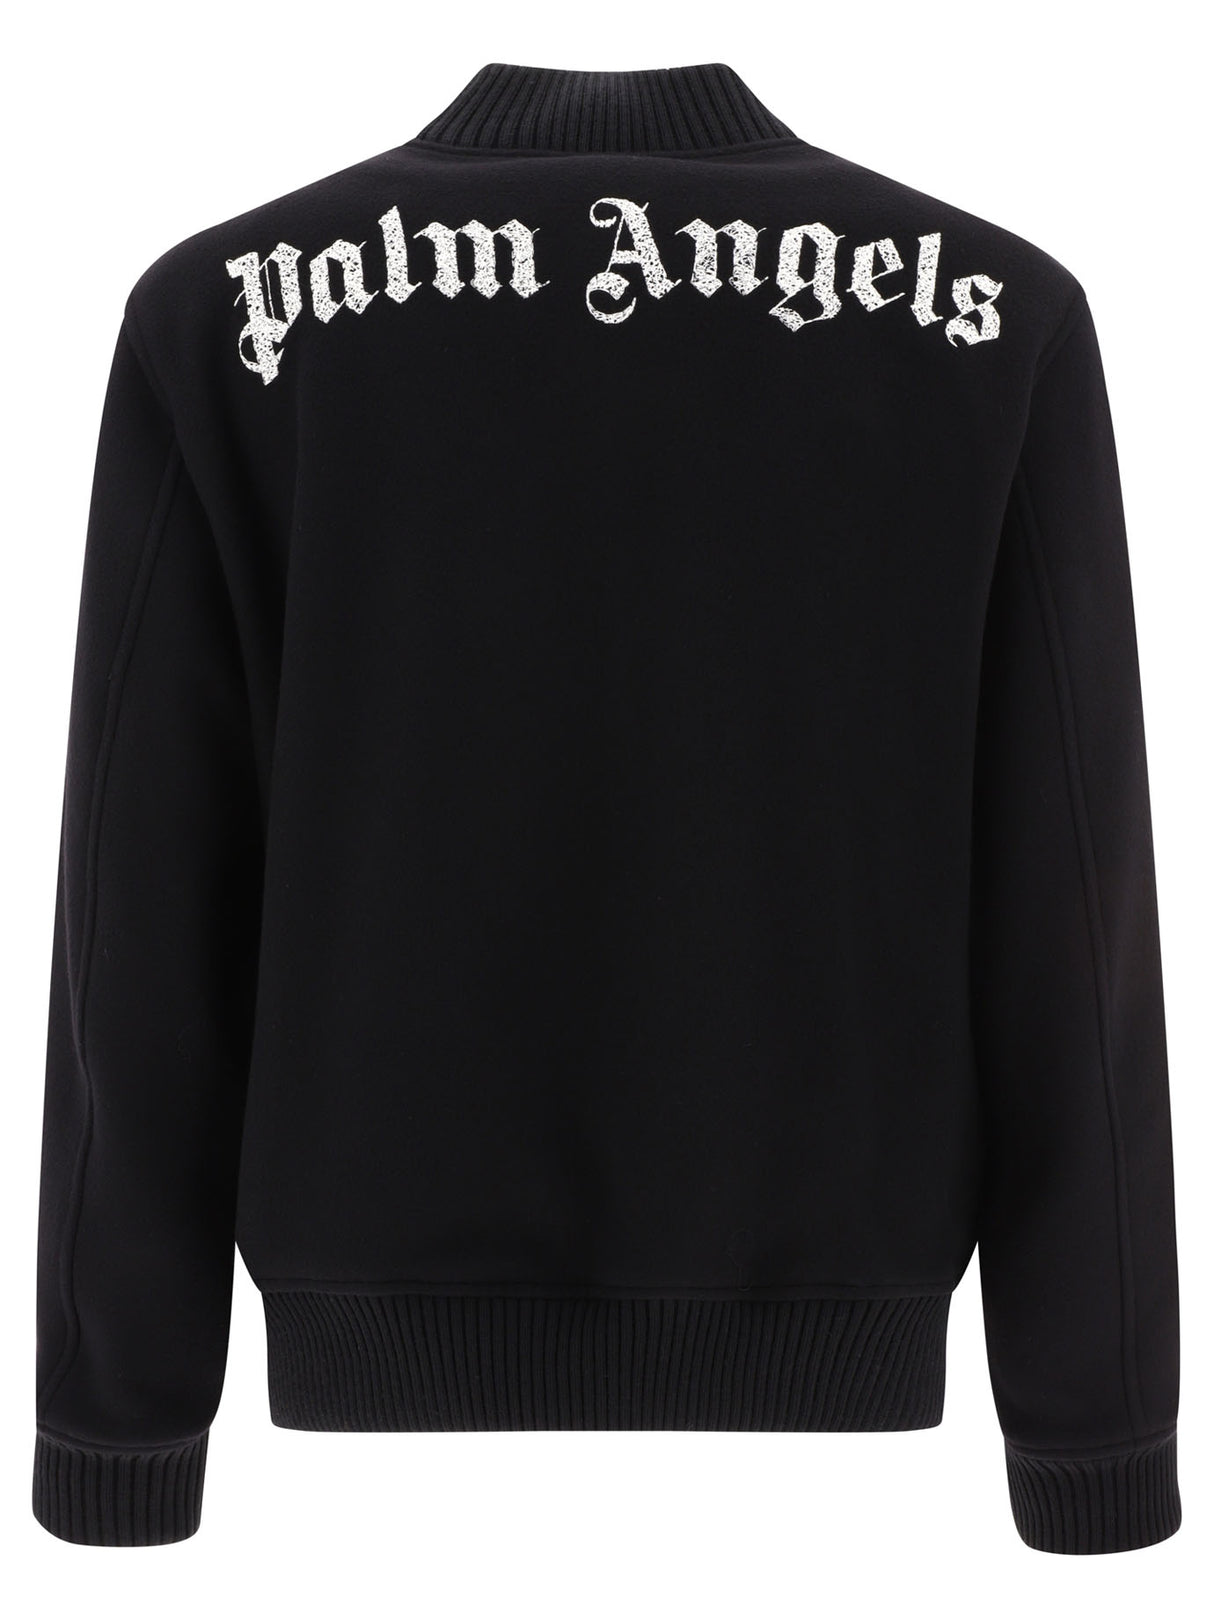 PALM ANGELS Sophisticated Varsity Jacket for Men